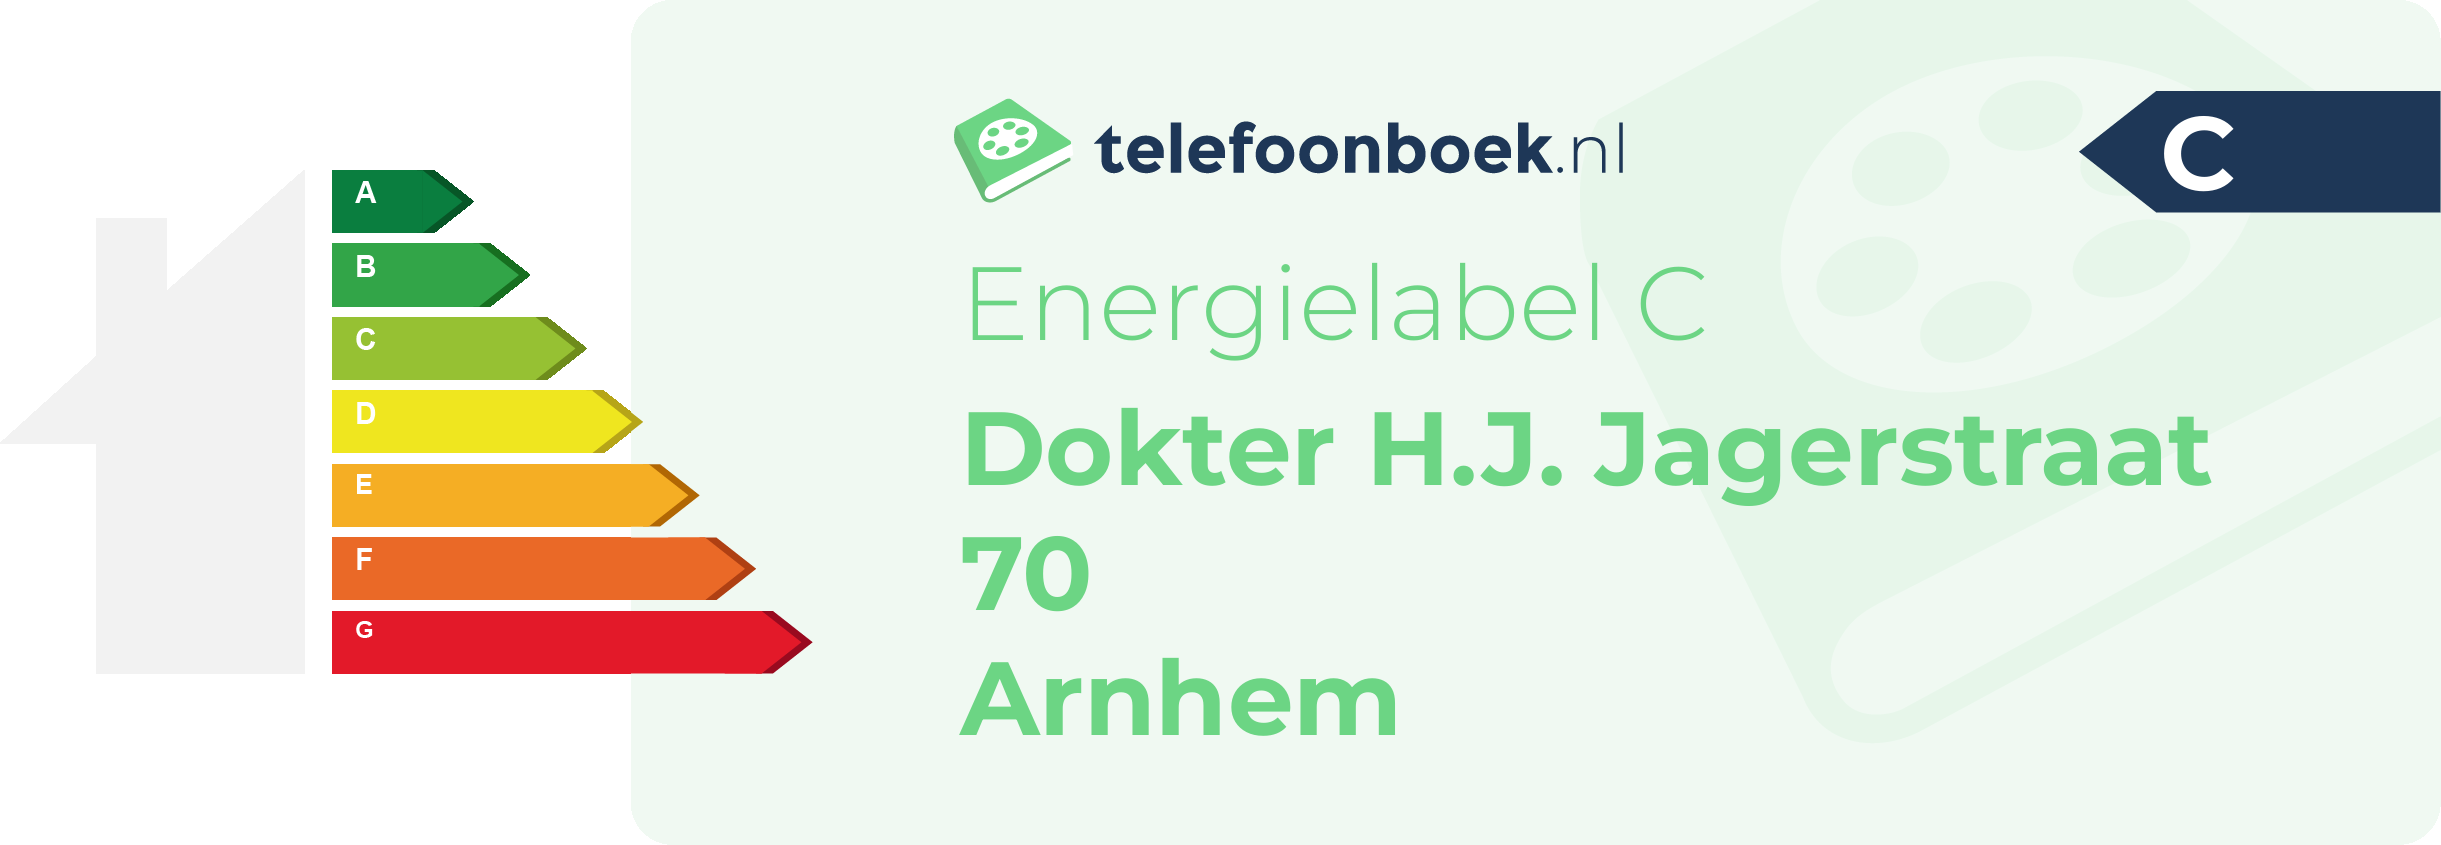 Energielabel Dokter H.J. Jagerstraat 70 Arnhem